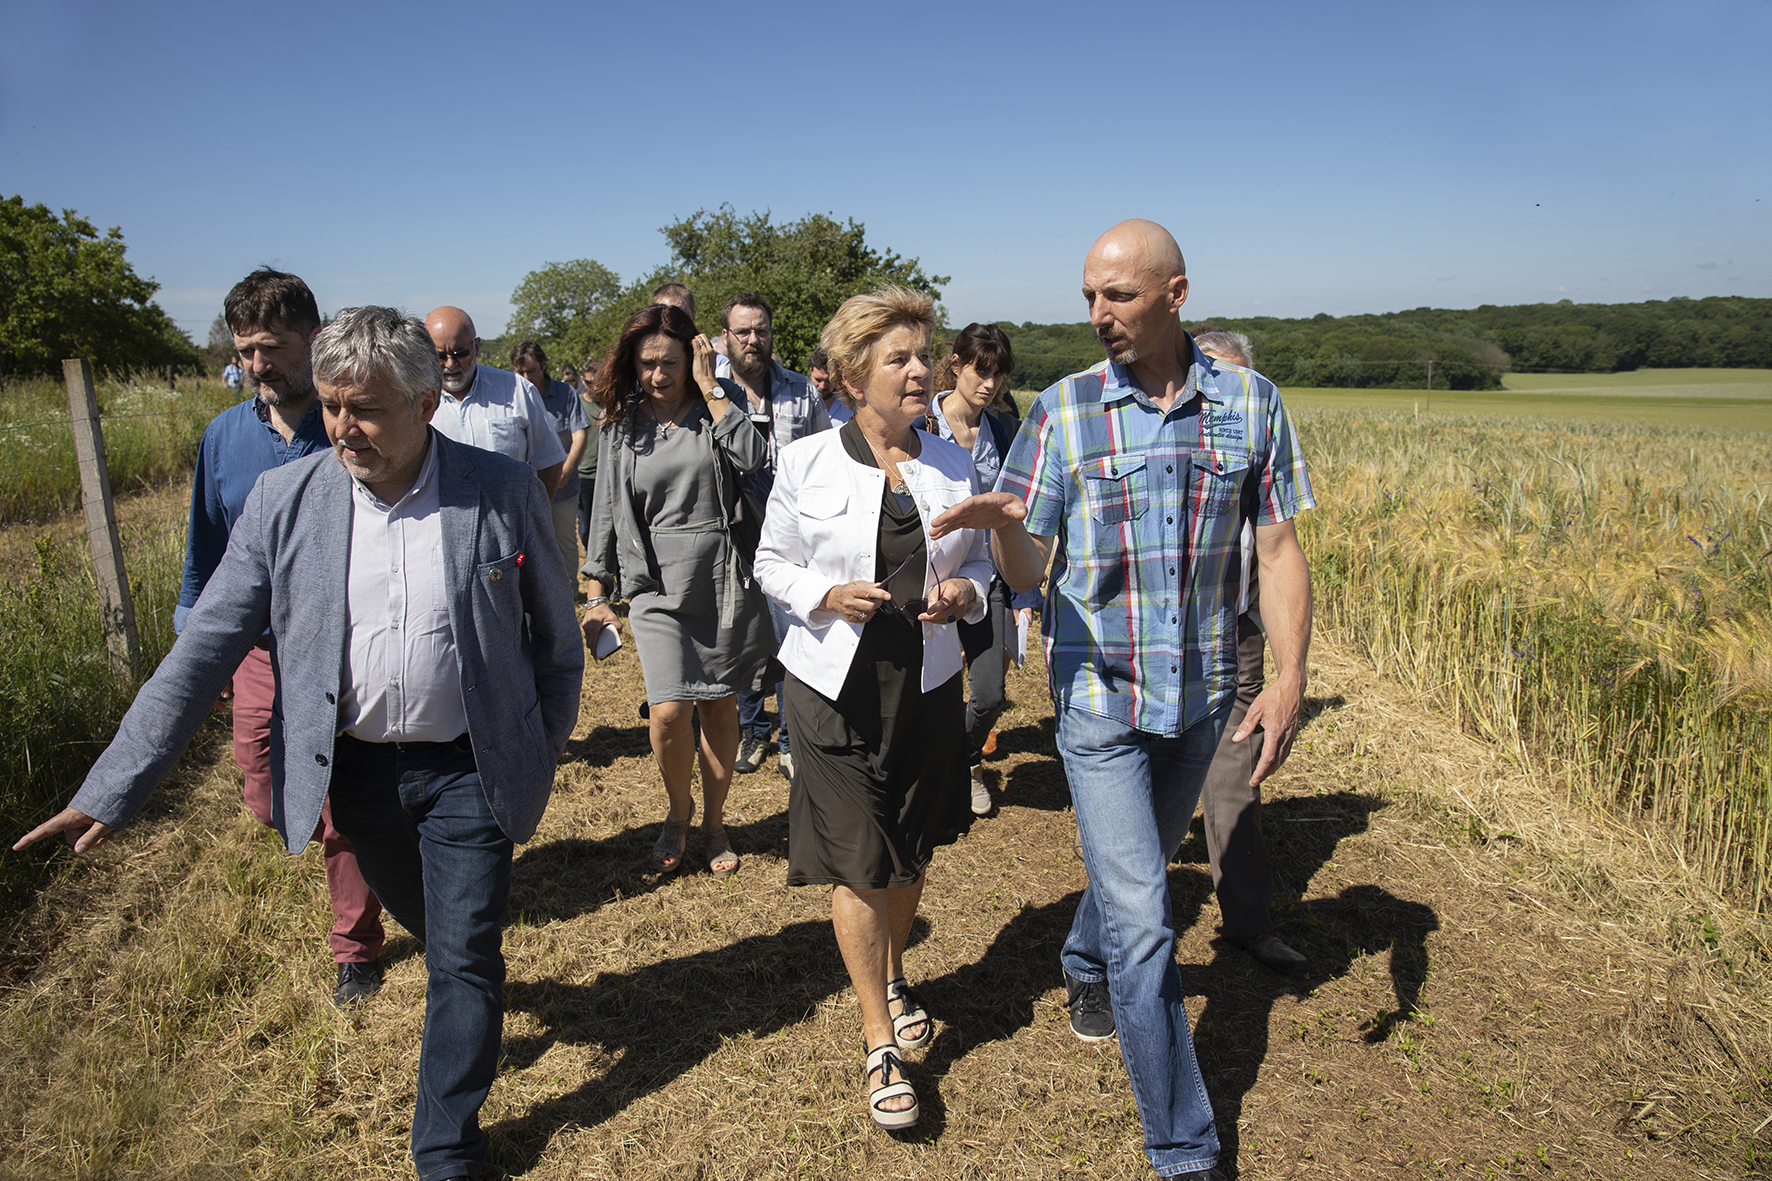 Déplacement de la présidente de Région Marie-Guite Dufay à la rencontre des acteurs de la filière agricole bio, lundi 17 juin 2019 en Haute-Saône - ©DavidCesbron